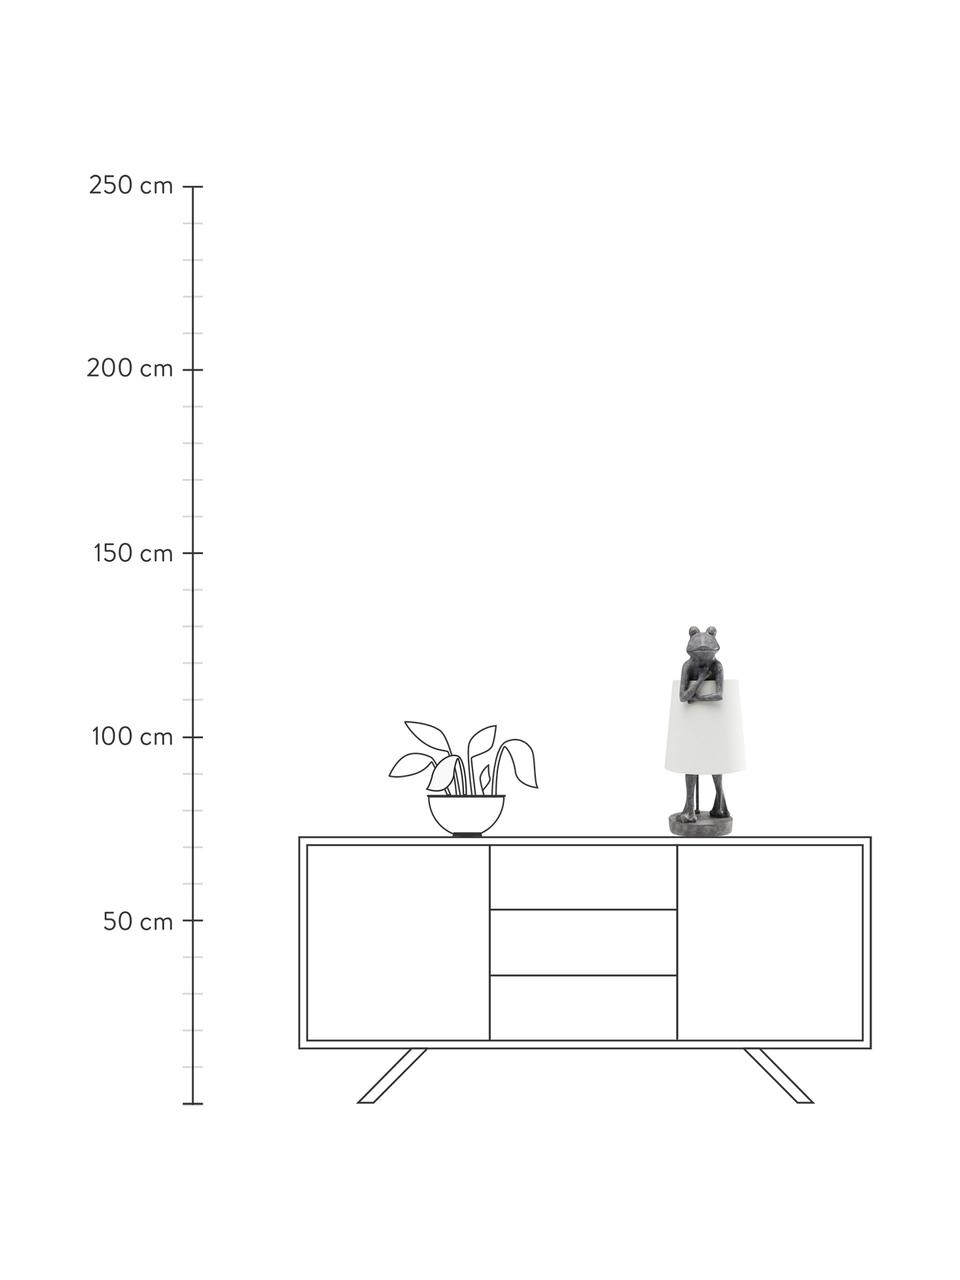 Große Tischlampe Animal Frog, Lampenschirm: Leinen, Lampenfuß: Polyresin, Grau, Weiß, 23 x 58 cm